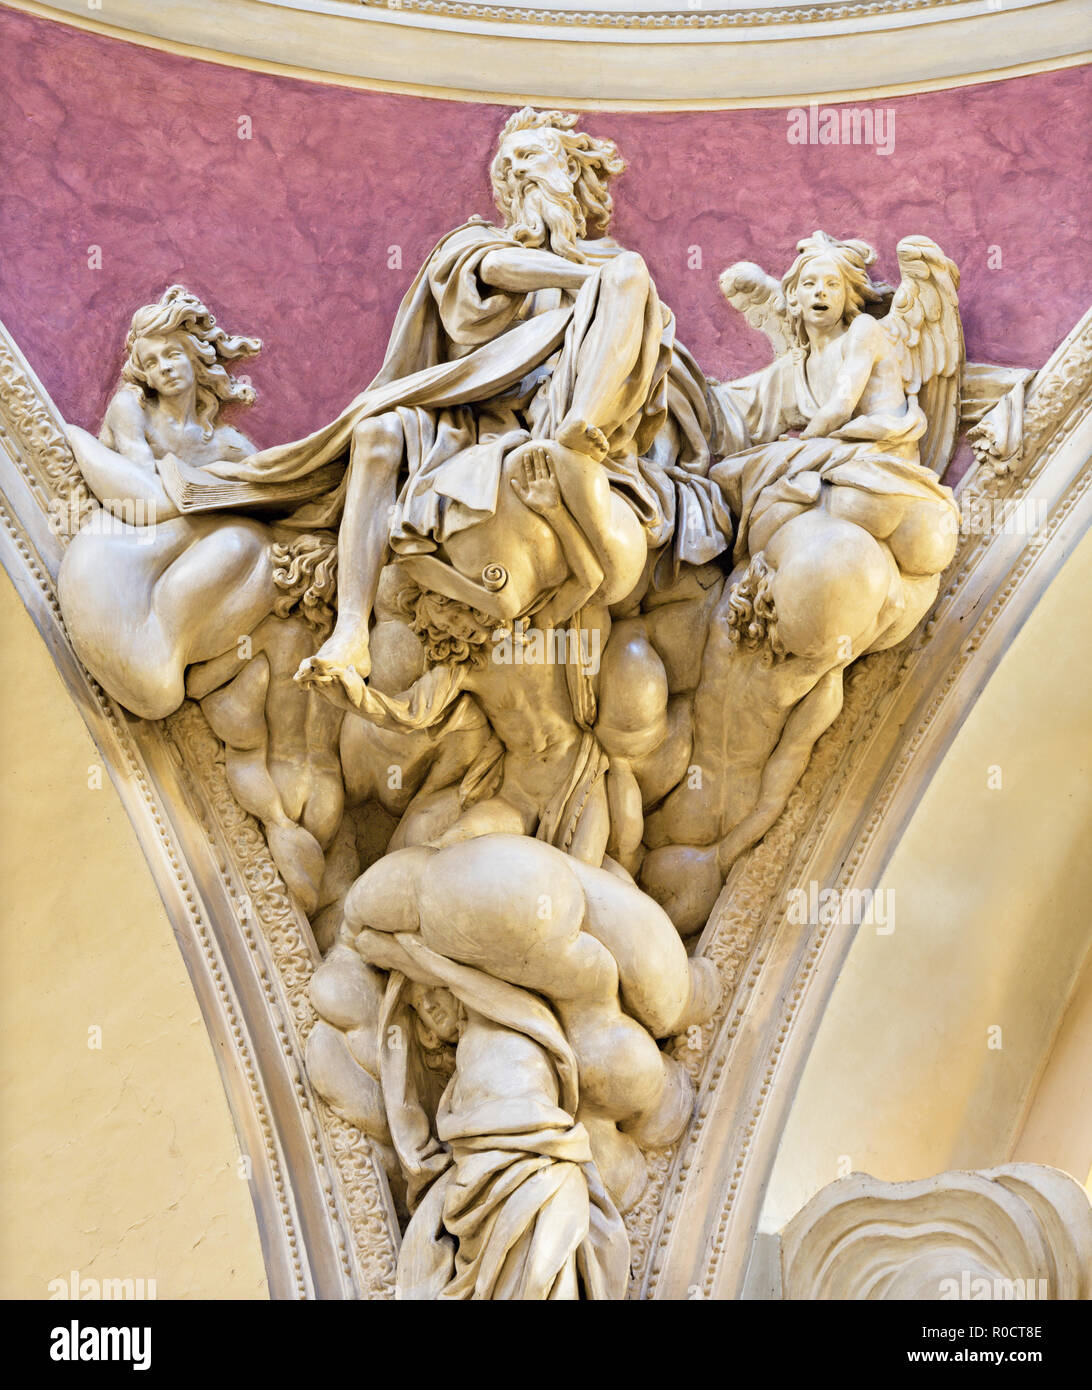 PARMA, Italia - 17 Aprile 2018: La statua barocca di San Matteo Evangelista nella cupola della chiesa di Santa Teresa di Domenico Reti da 17. c Foto Stock